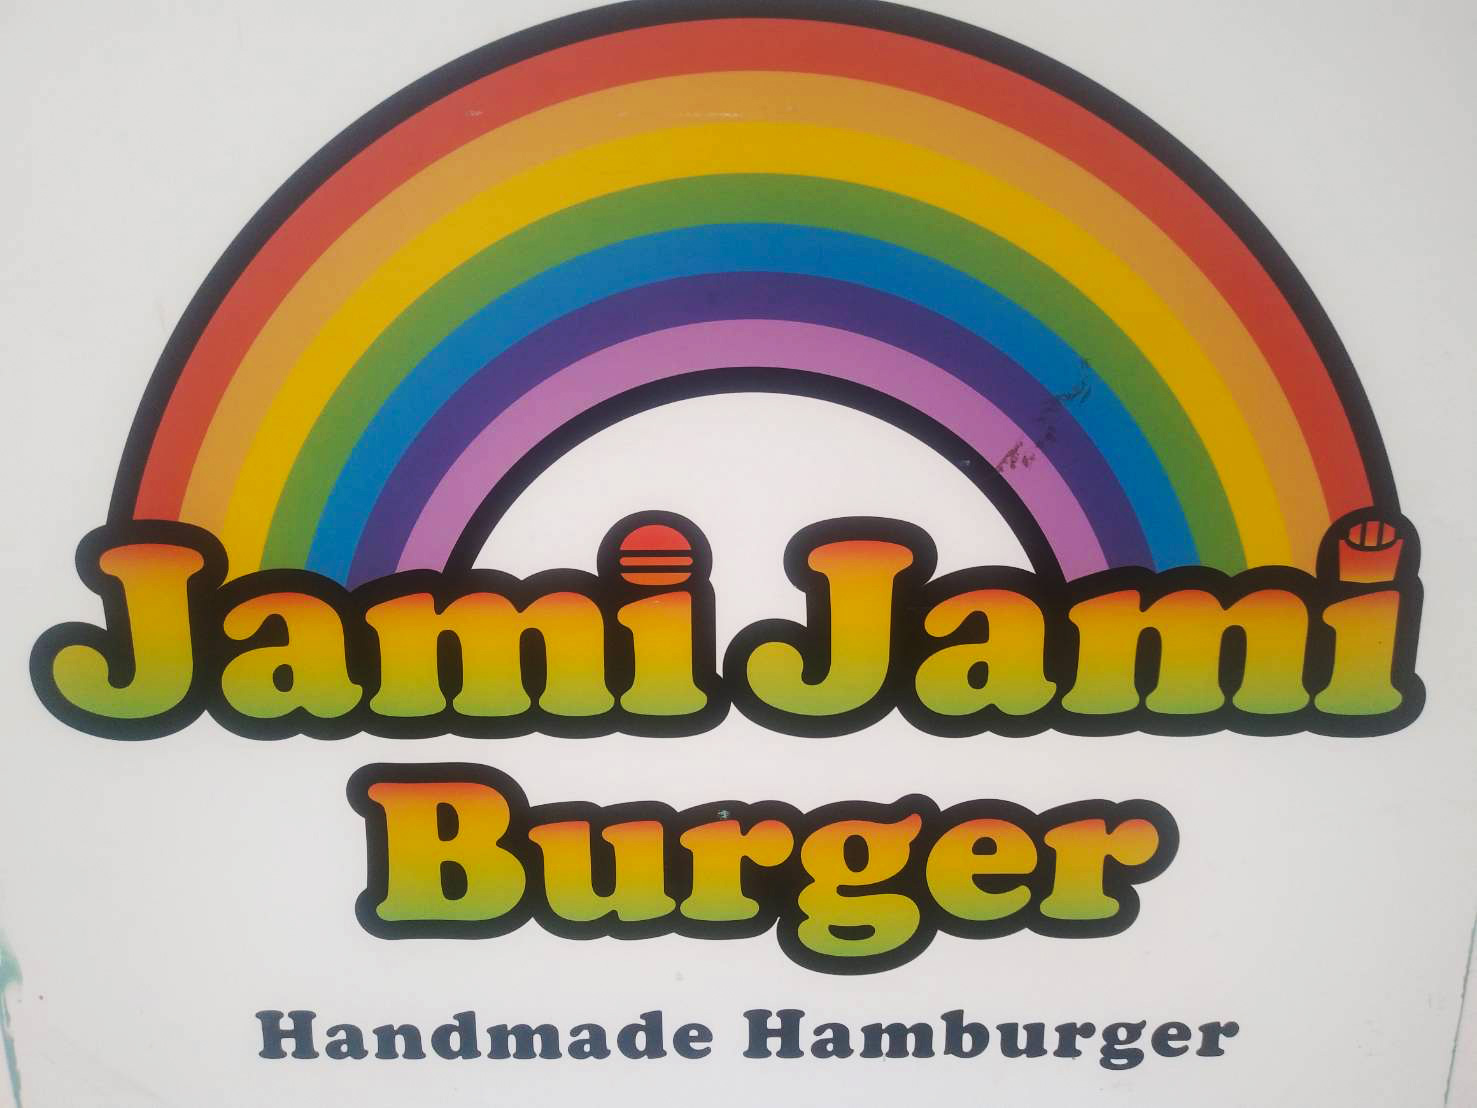 JAMI JAMI BURGER（ジャミジャミバーガー）の店長（ロゴ）の写真